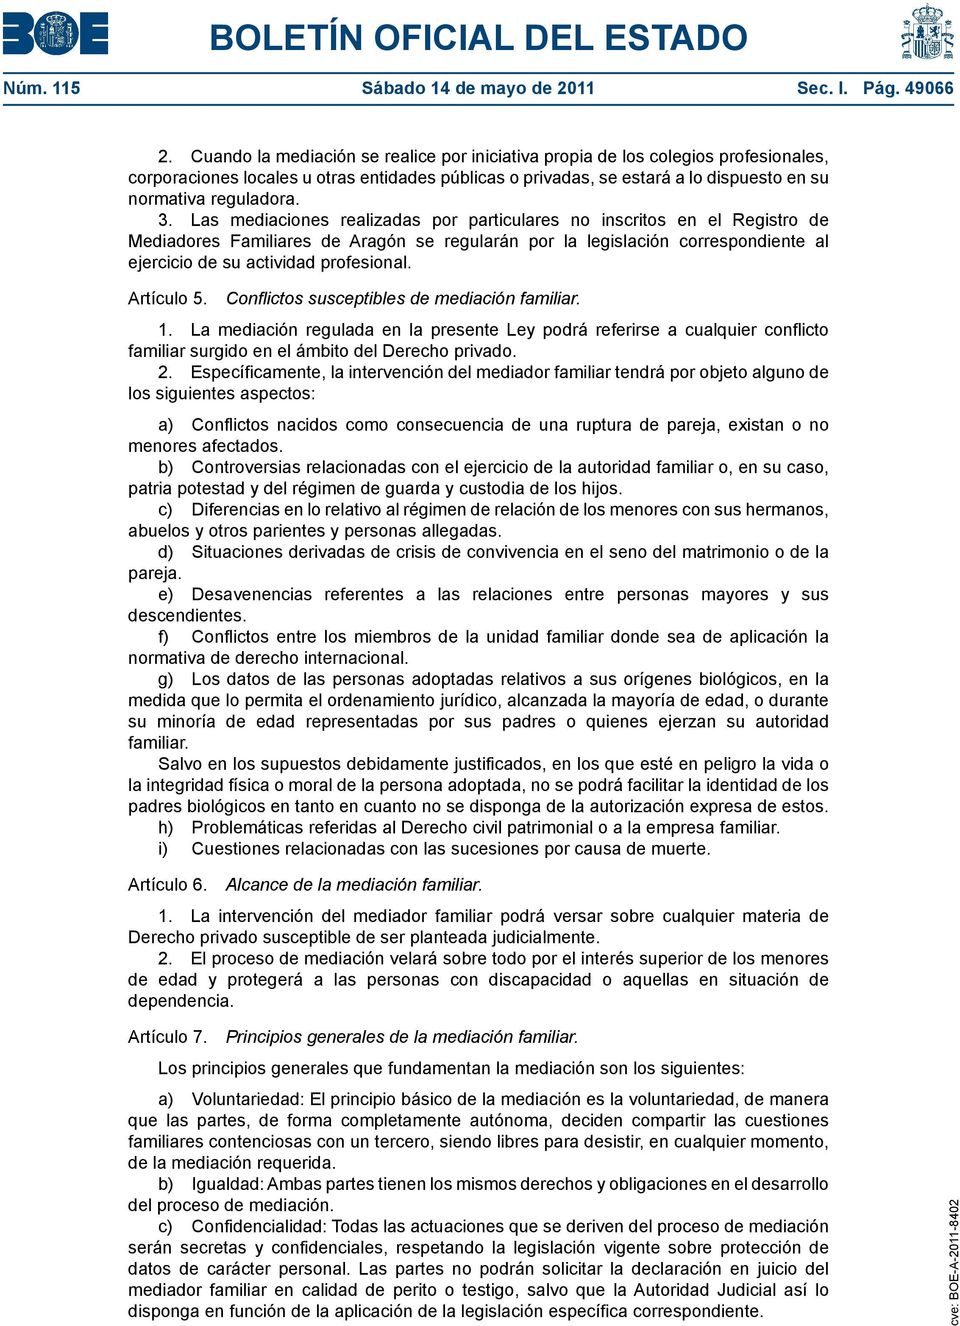 Las mediaciones realizadas por particulares no inscritos en el Registro de Mediadores Familiares de Aragón se regularán por la legislación correspondiente al ejercicio de su actividad profesional.